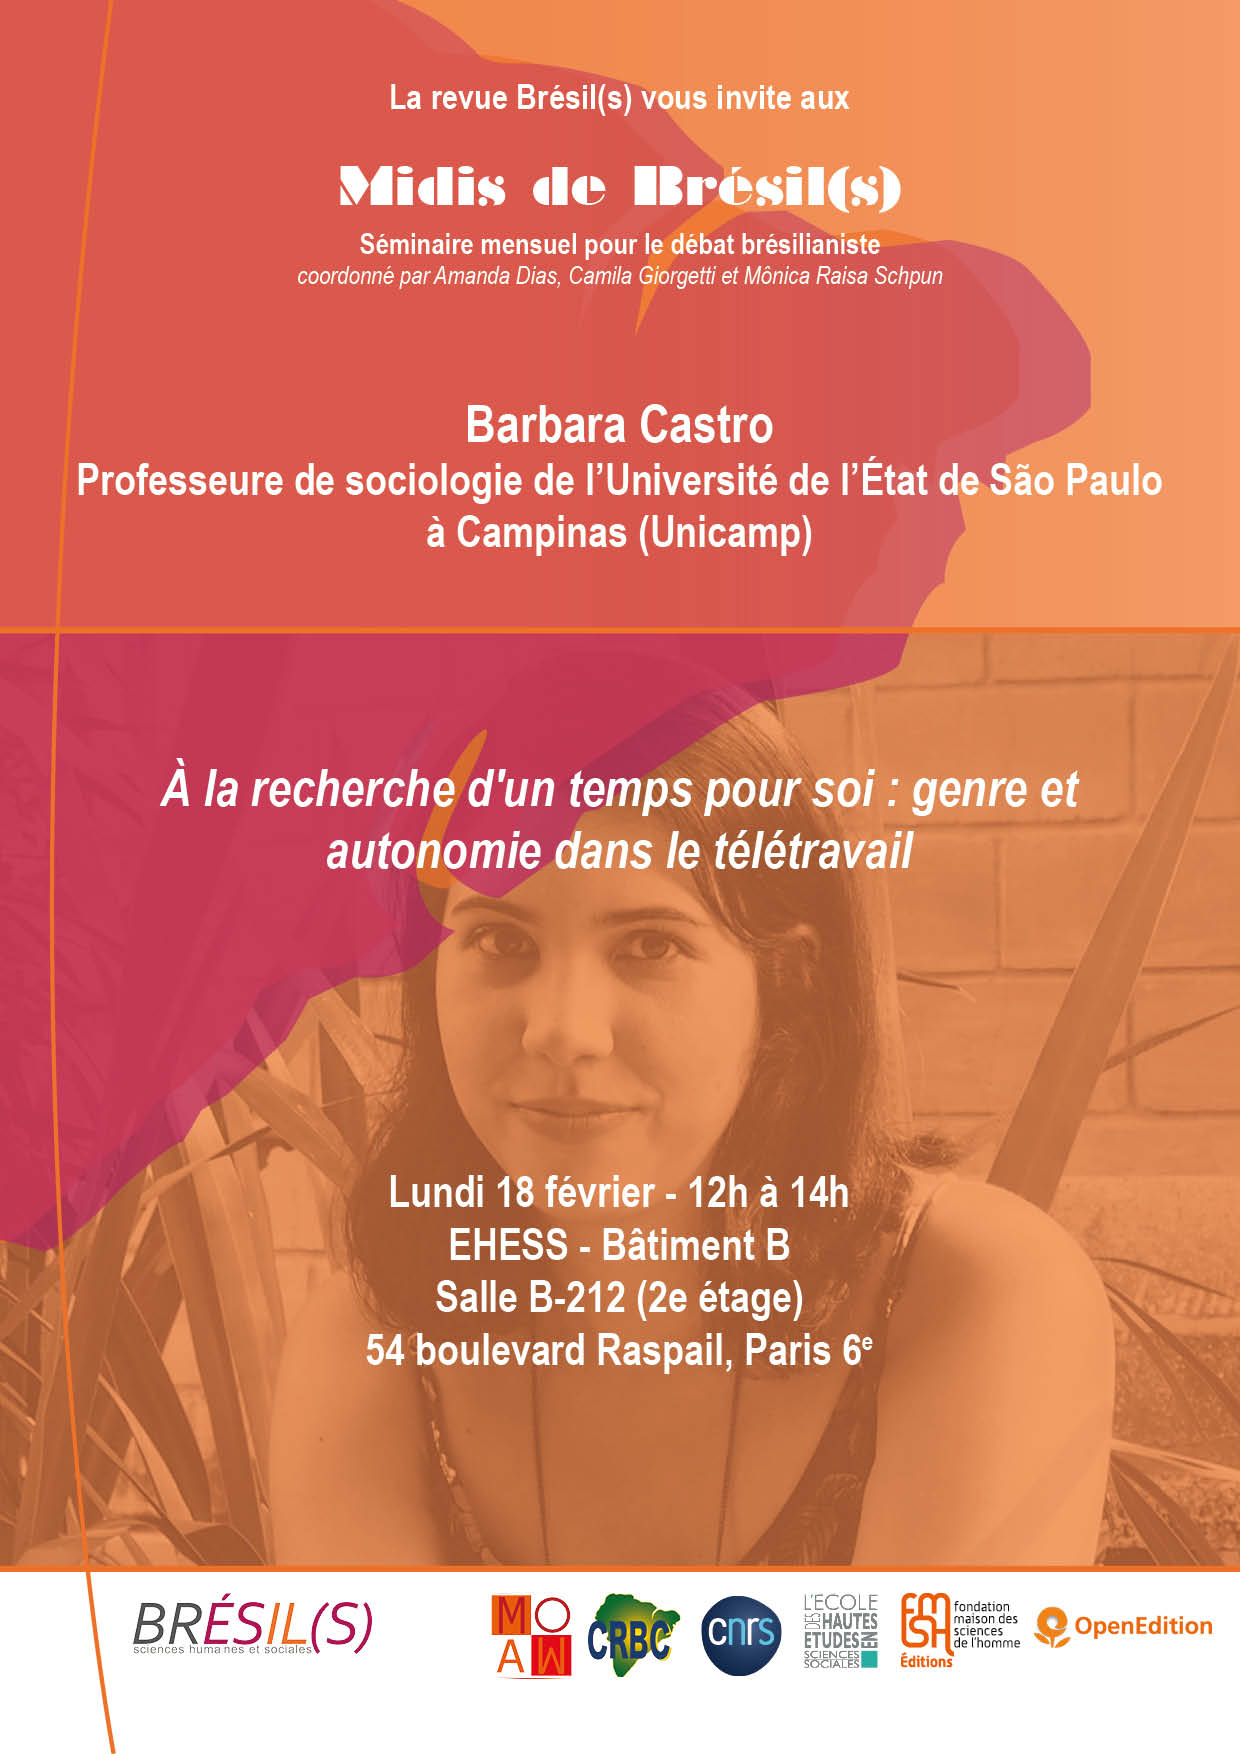 Les Midis de Brésil(s) - Barbara Castro, professeure de sociologie de l’Université de l’État de São Paulo à Campinas (Unicamp)- « À la recherche d'un temps pour soi : genre et autonomie dans le télétravail »